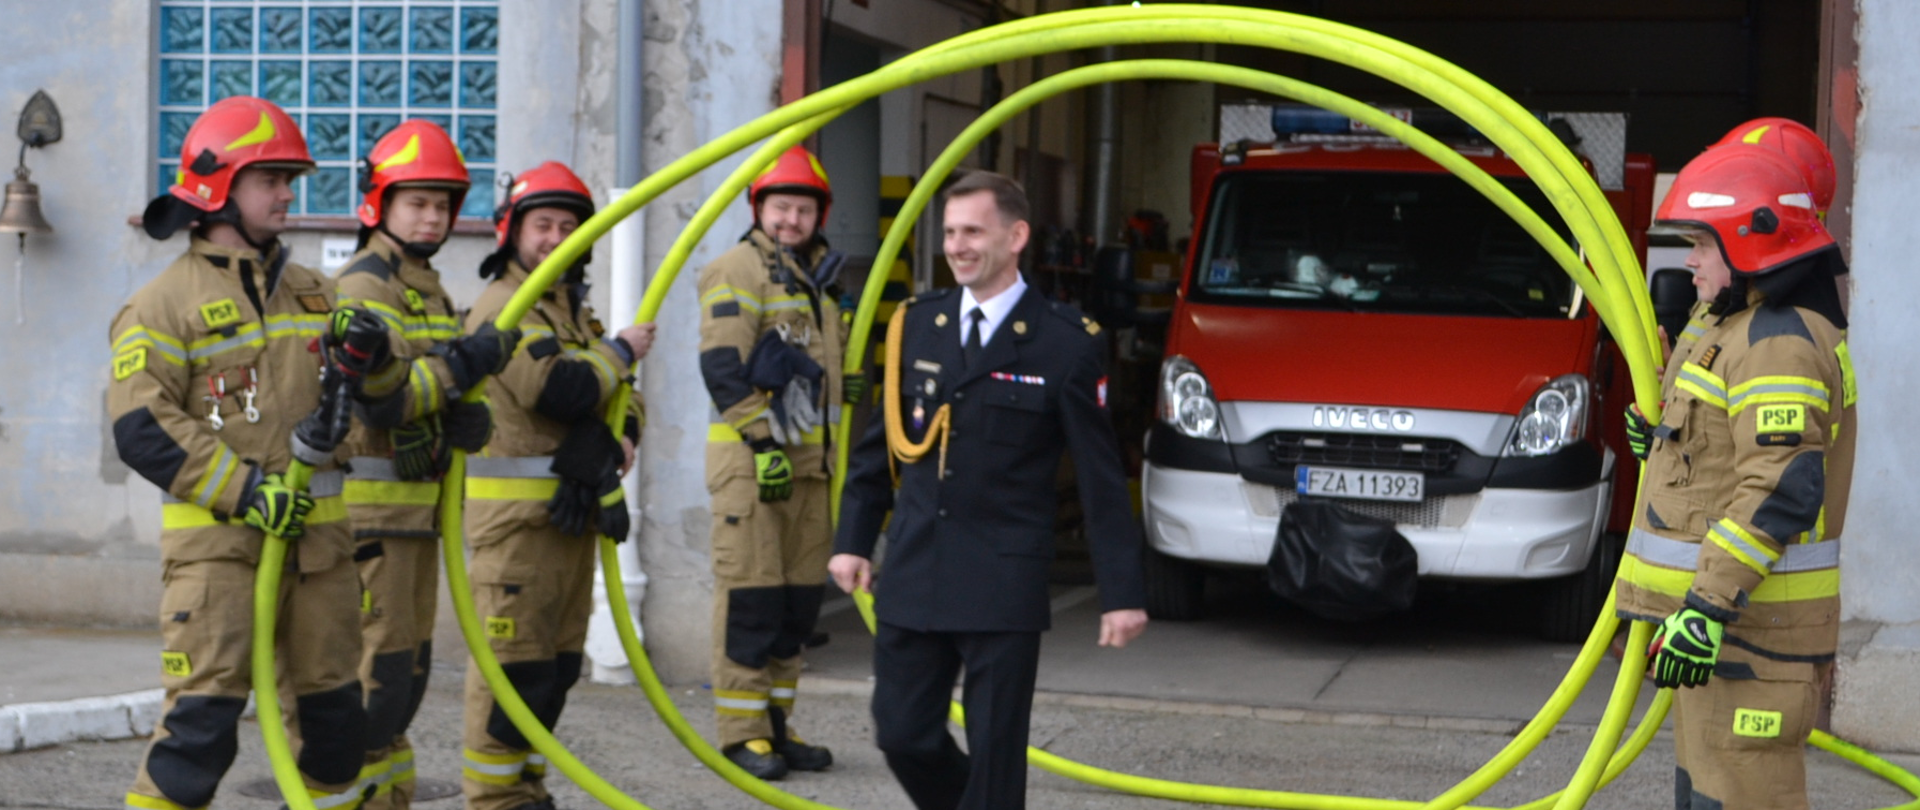 Strażak przechodzi przez szpaler tworzony przez strażaków w mundurach bokowych i czerwonych hełmach. Strażacy trzymają wąż strażacki wypełniony wodą zwinięty w spiralę.